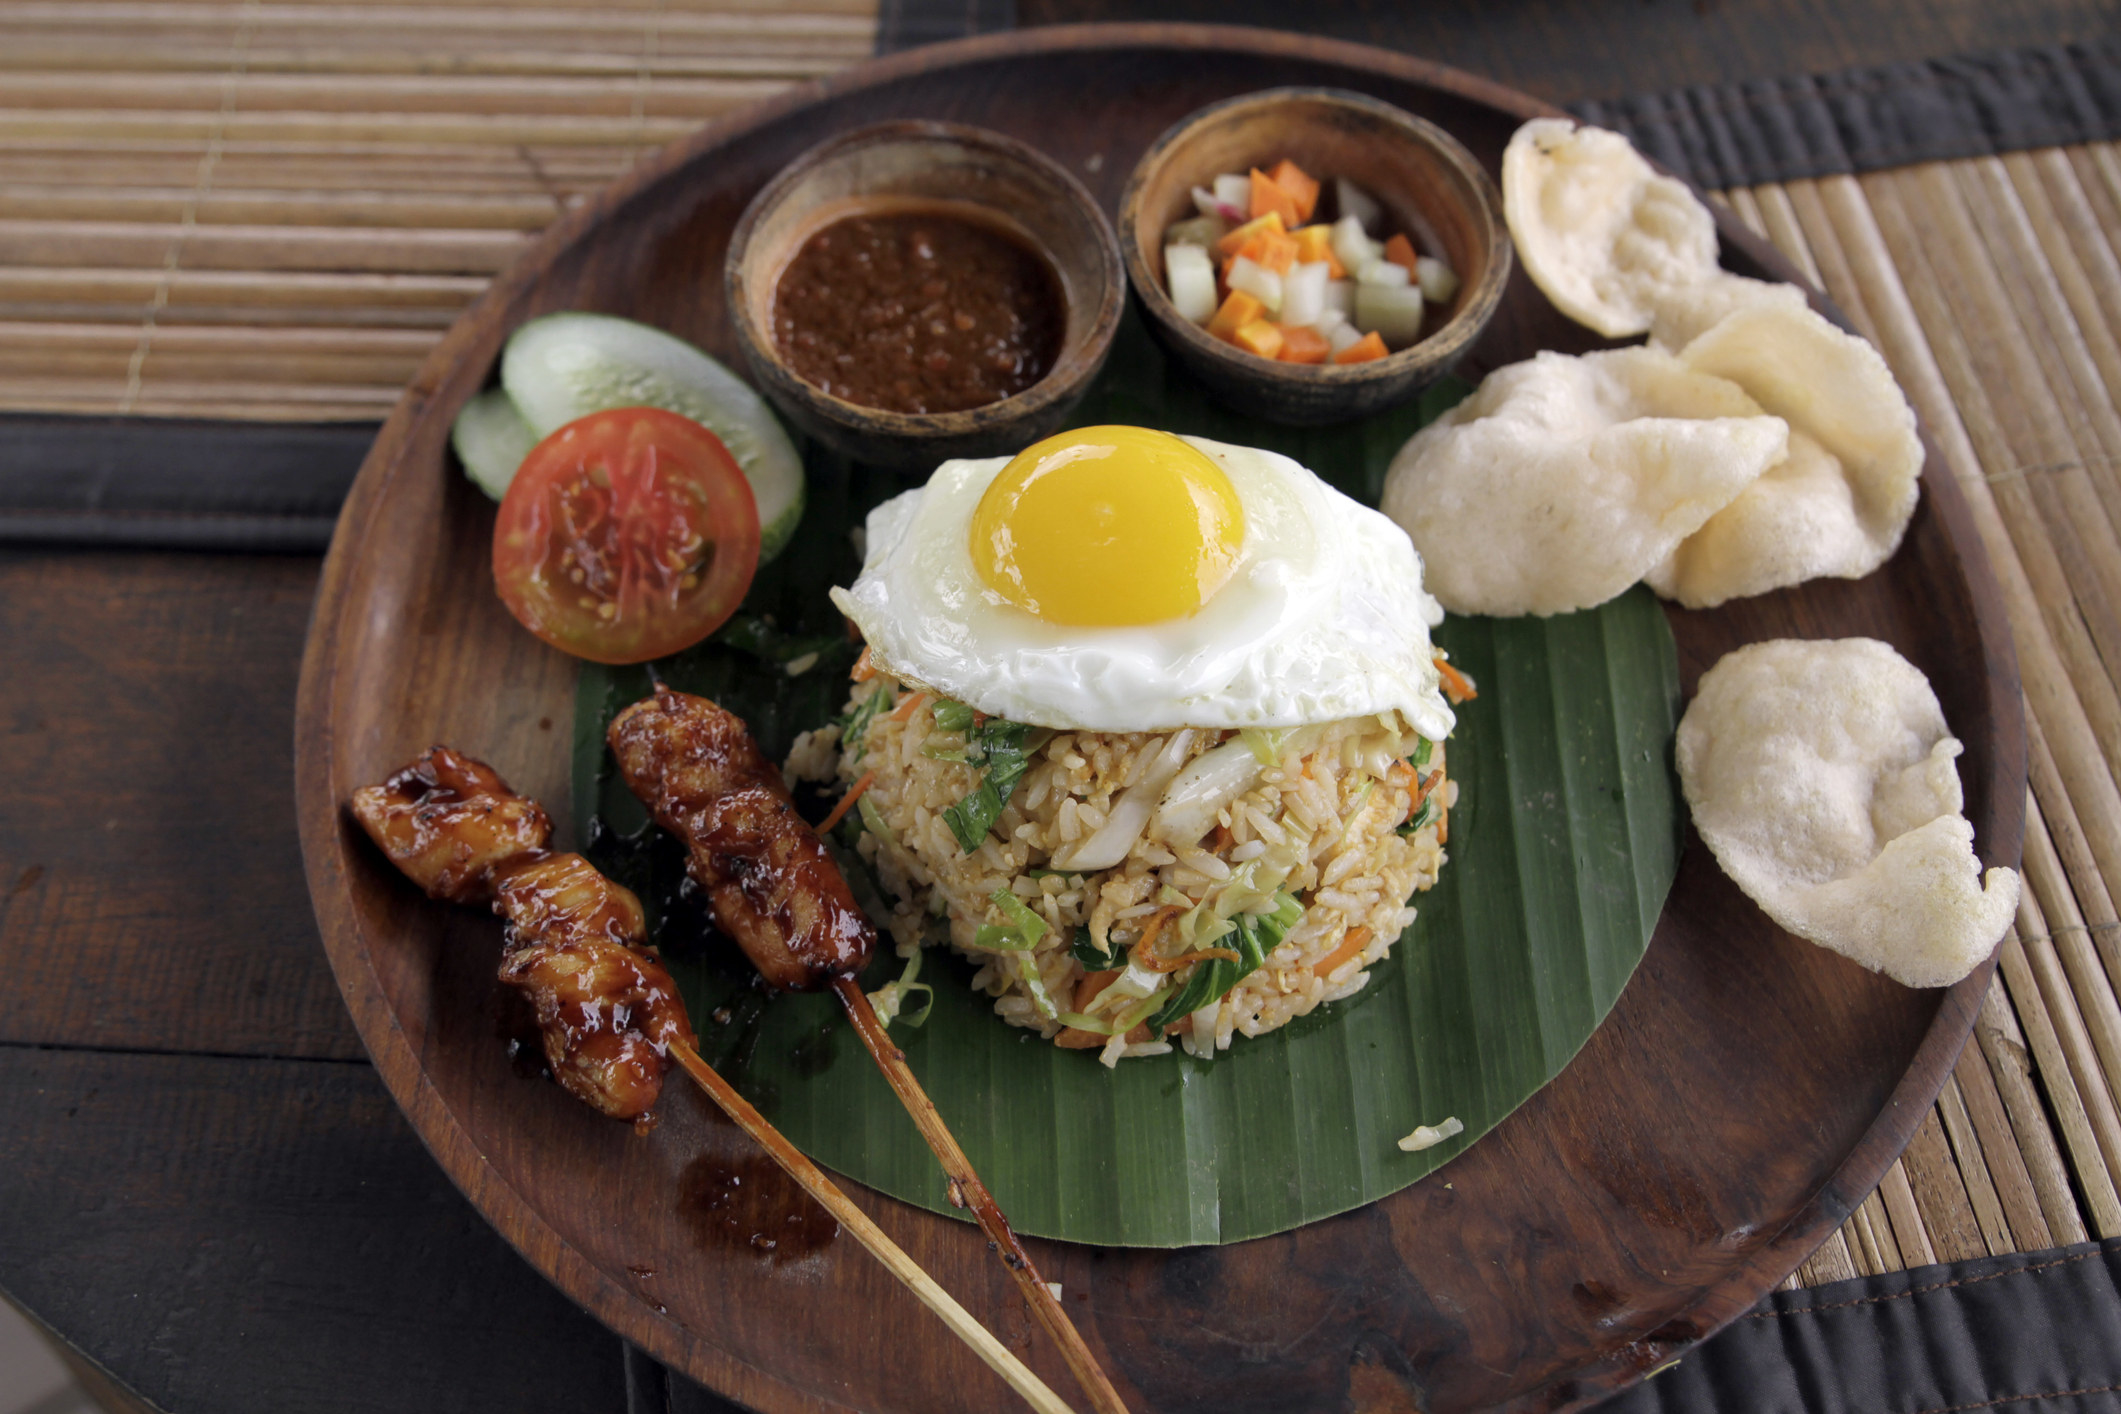 A plate of Nasi Goreng, Indonesian food